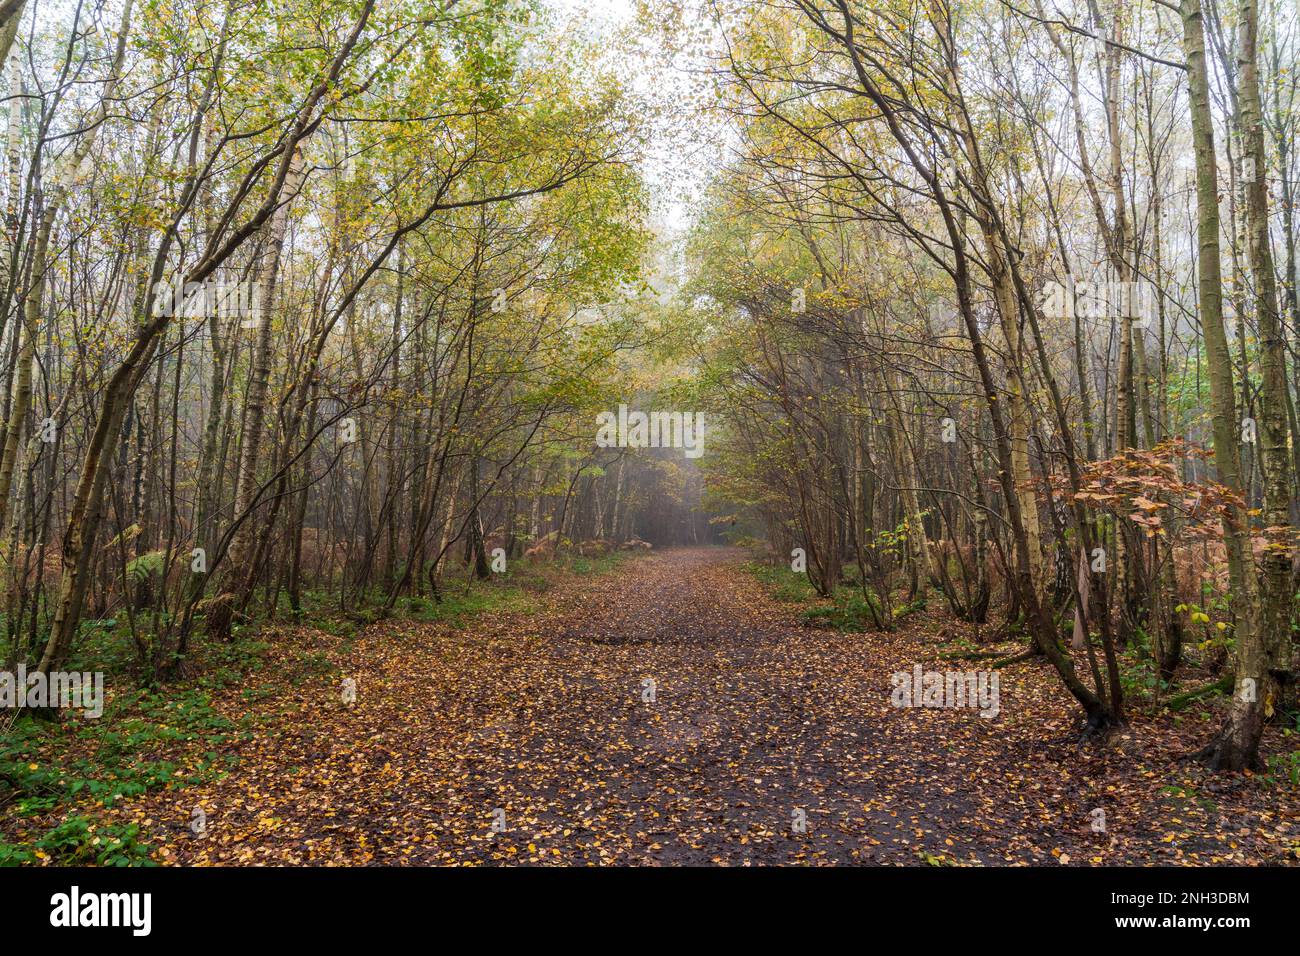 Breite Spur führt durch gemischte Wälder in Clowes Wood, Kent, England. Birken säumen den Pfad teilweise mit heruntergefallenen Blättern. Warme Atmosphäre. Stockfoto